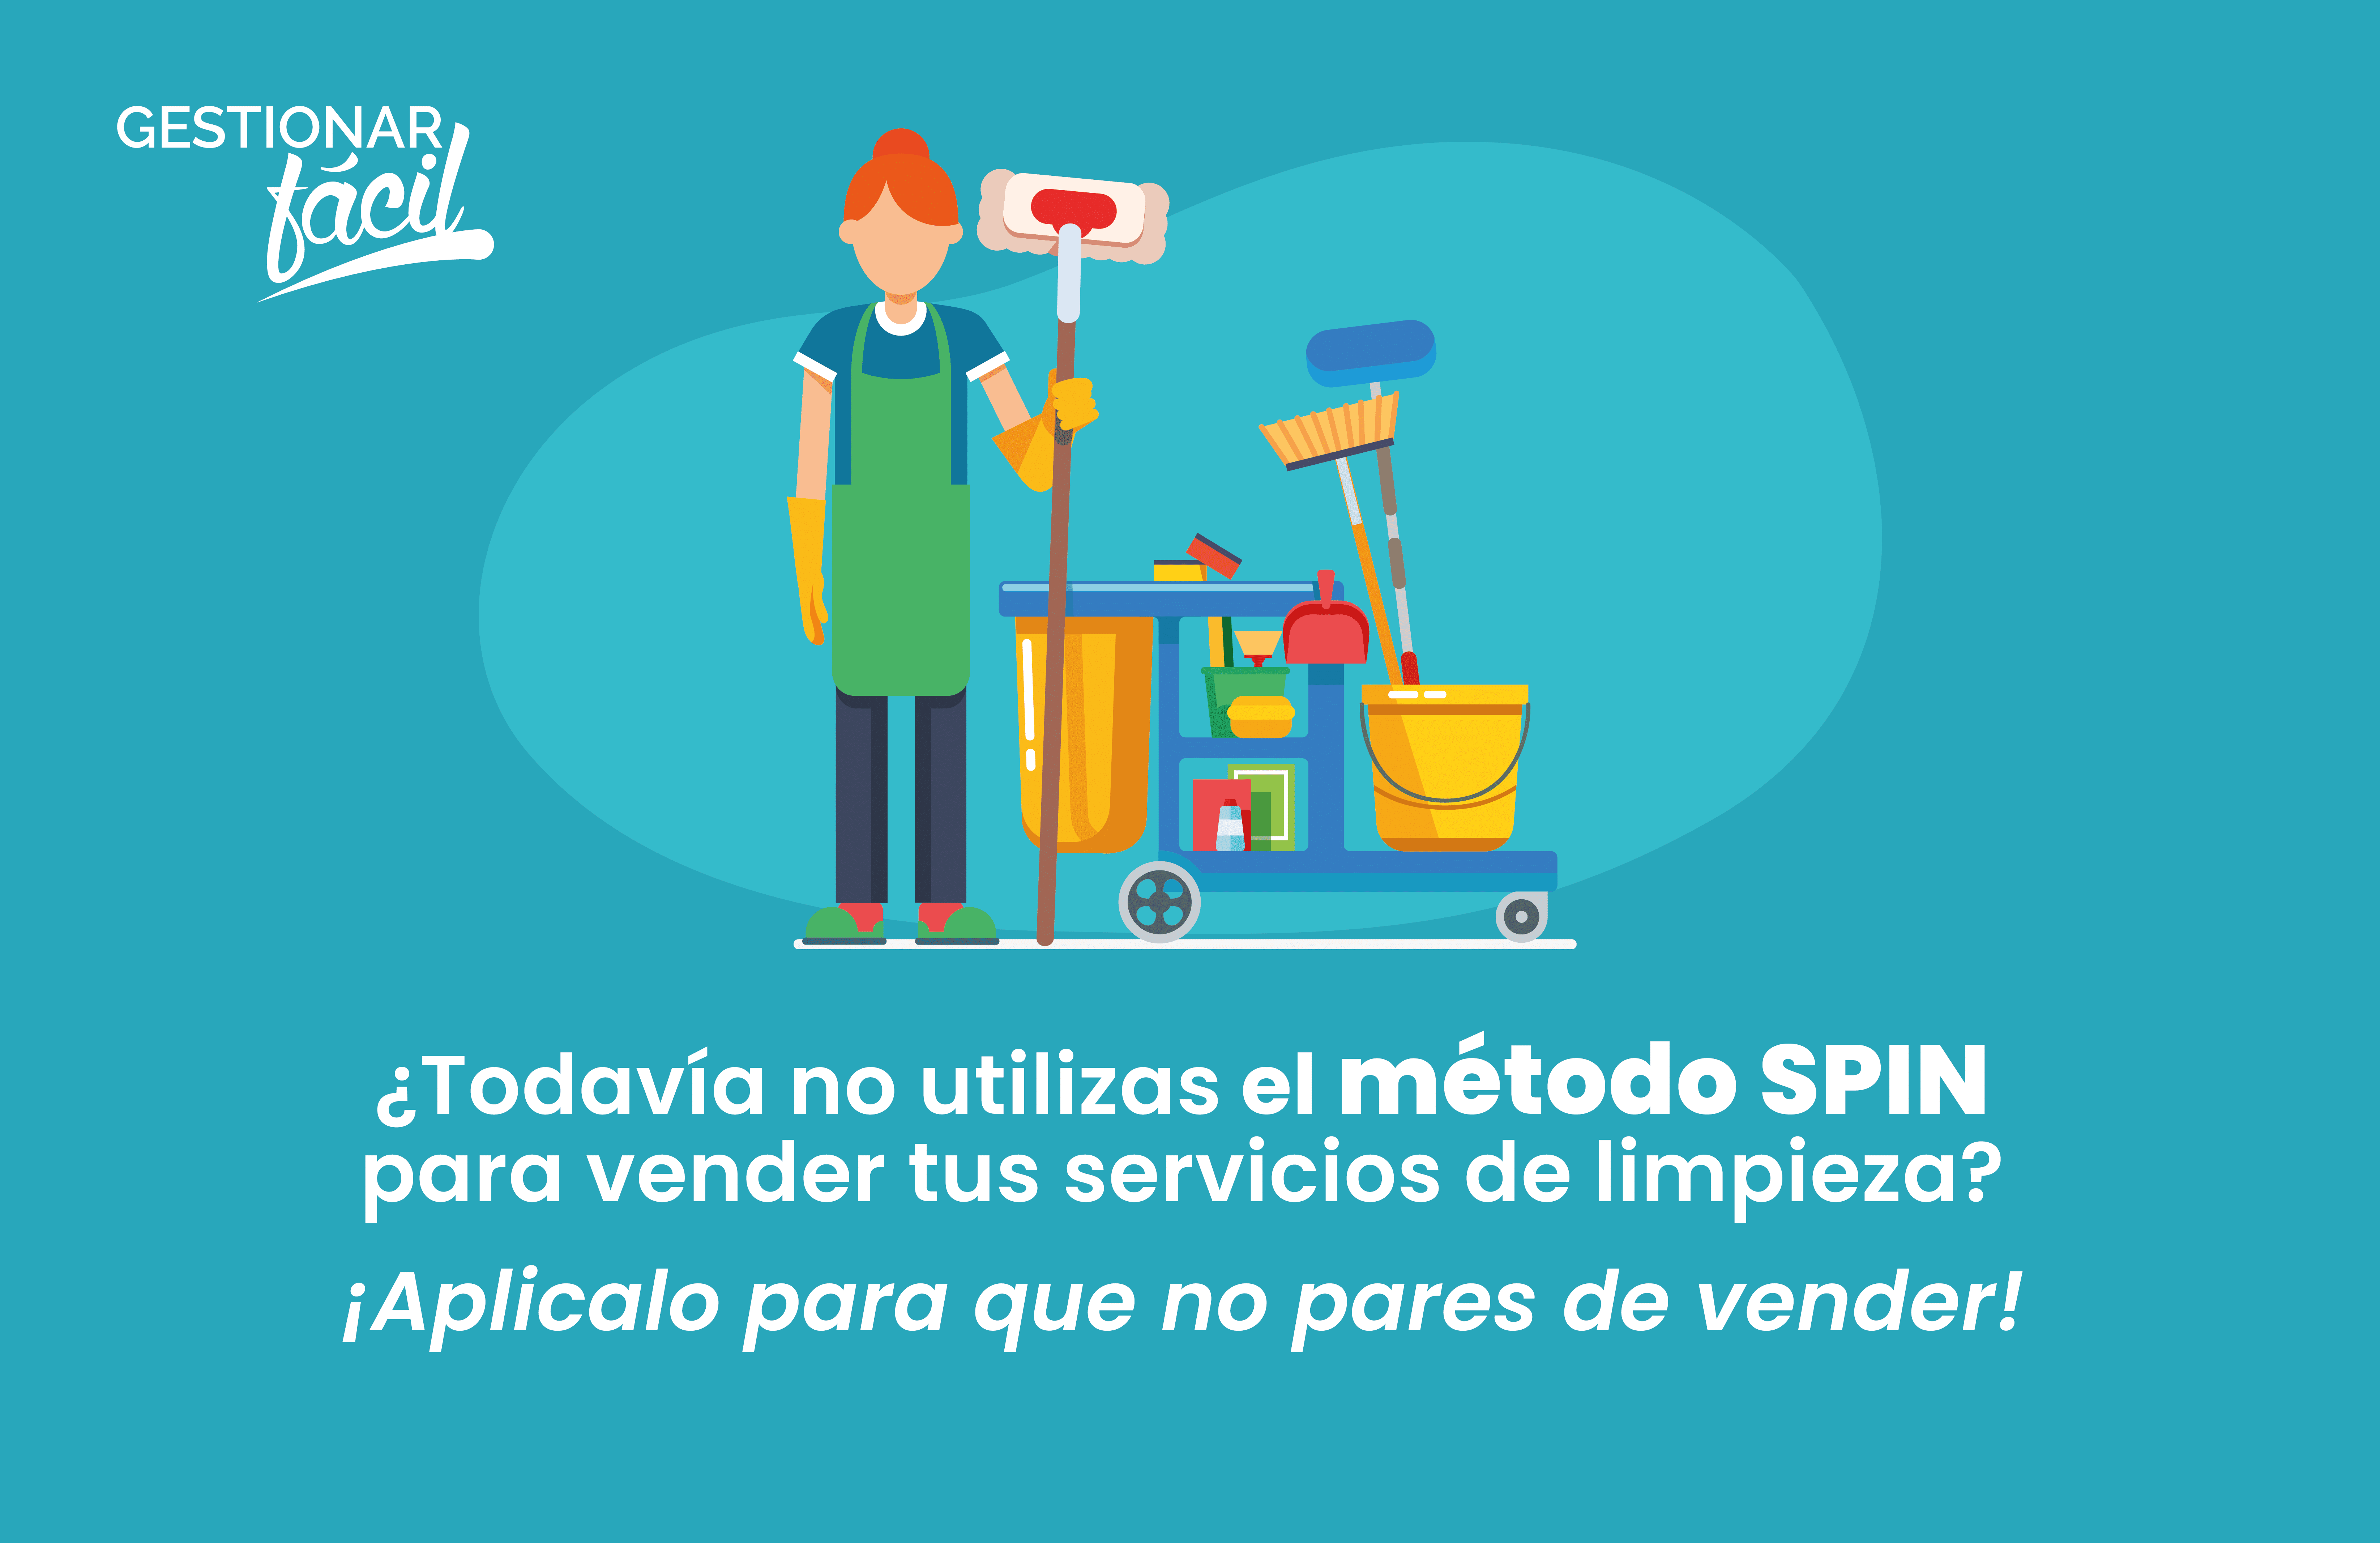 Cómo aplicar el método SPIN para vender servicio de limpieza